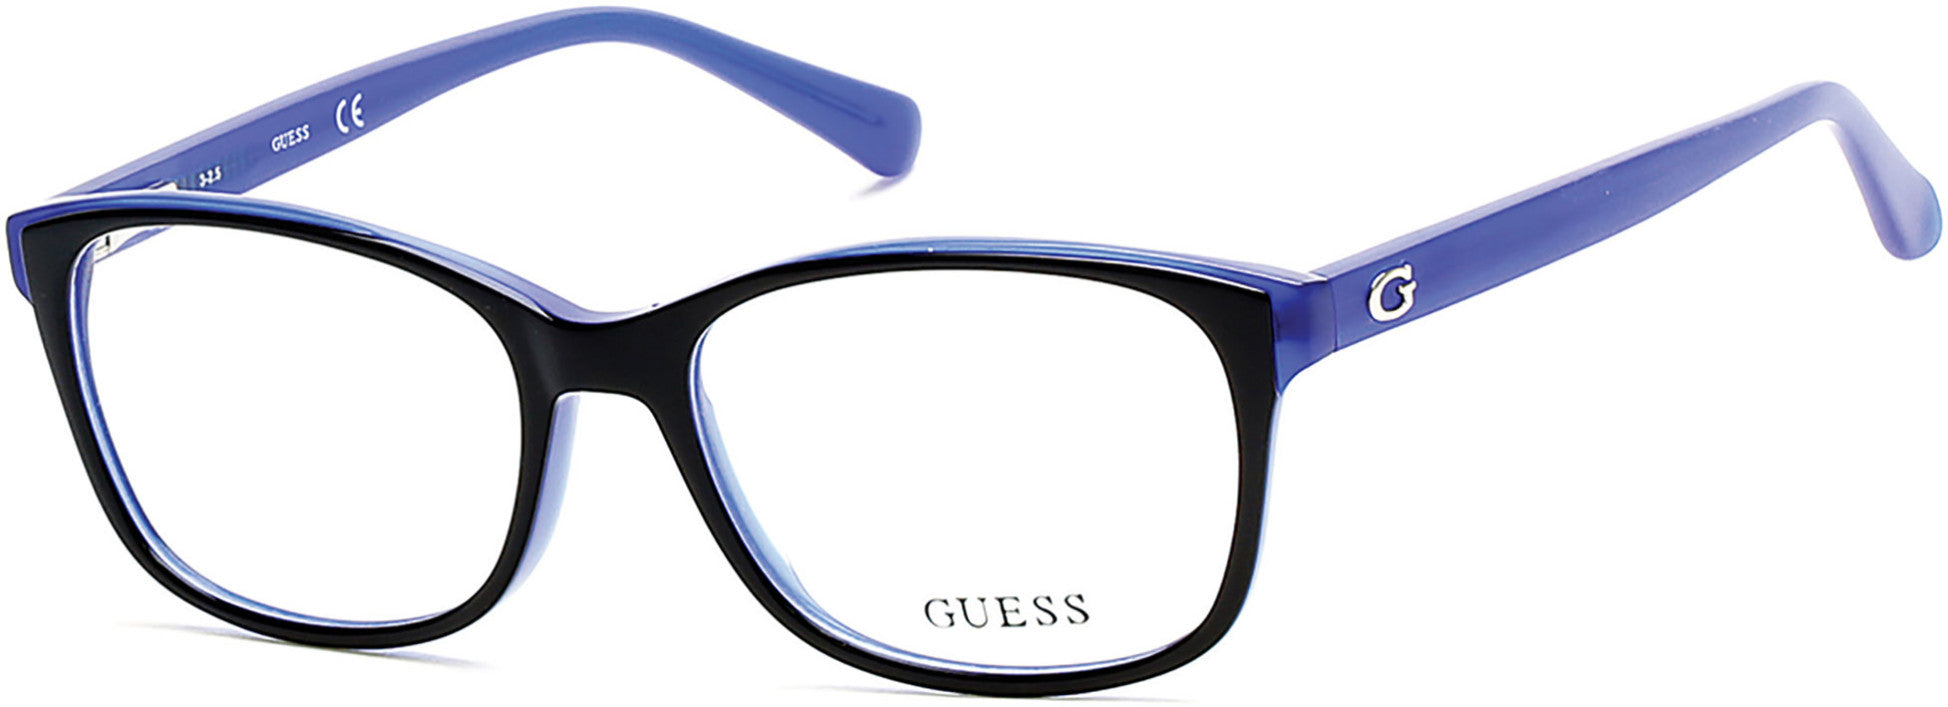 Guess GU2582 Geometric Eyeglasses 001-001 - Shiny Black